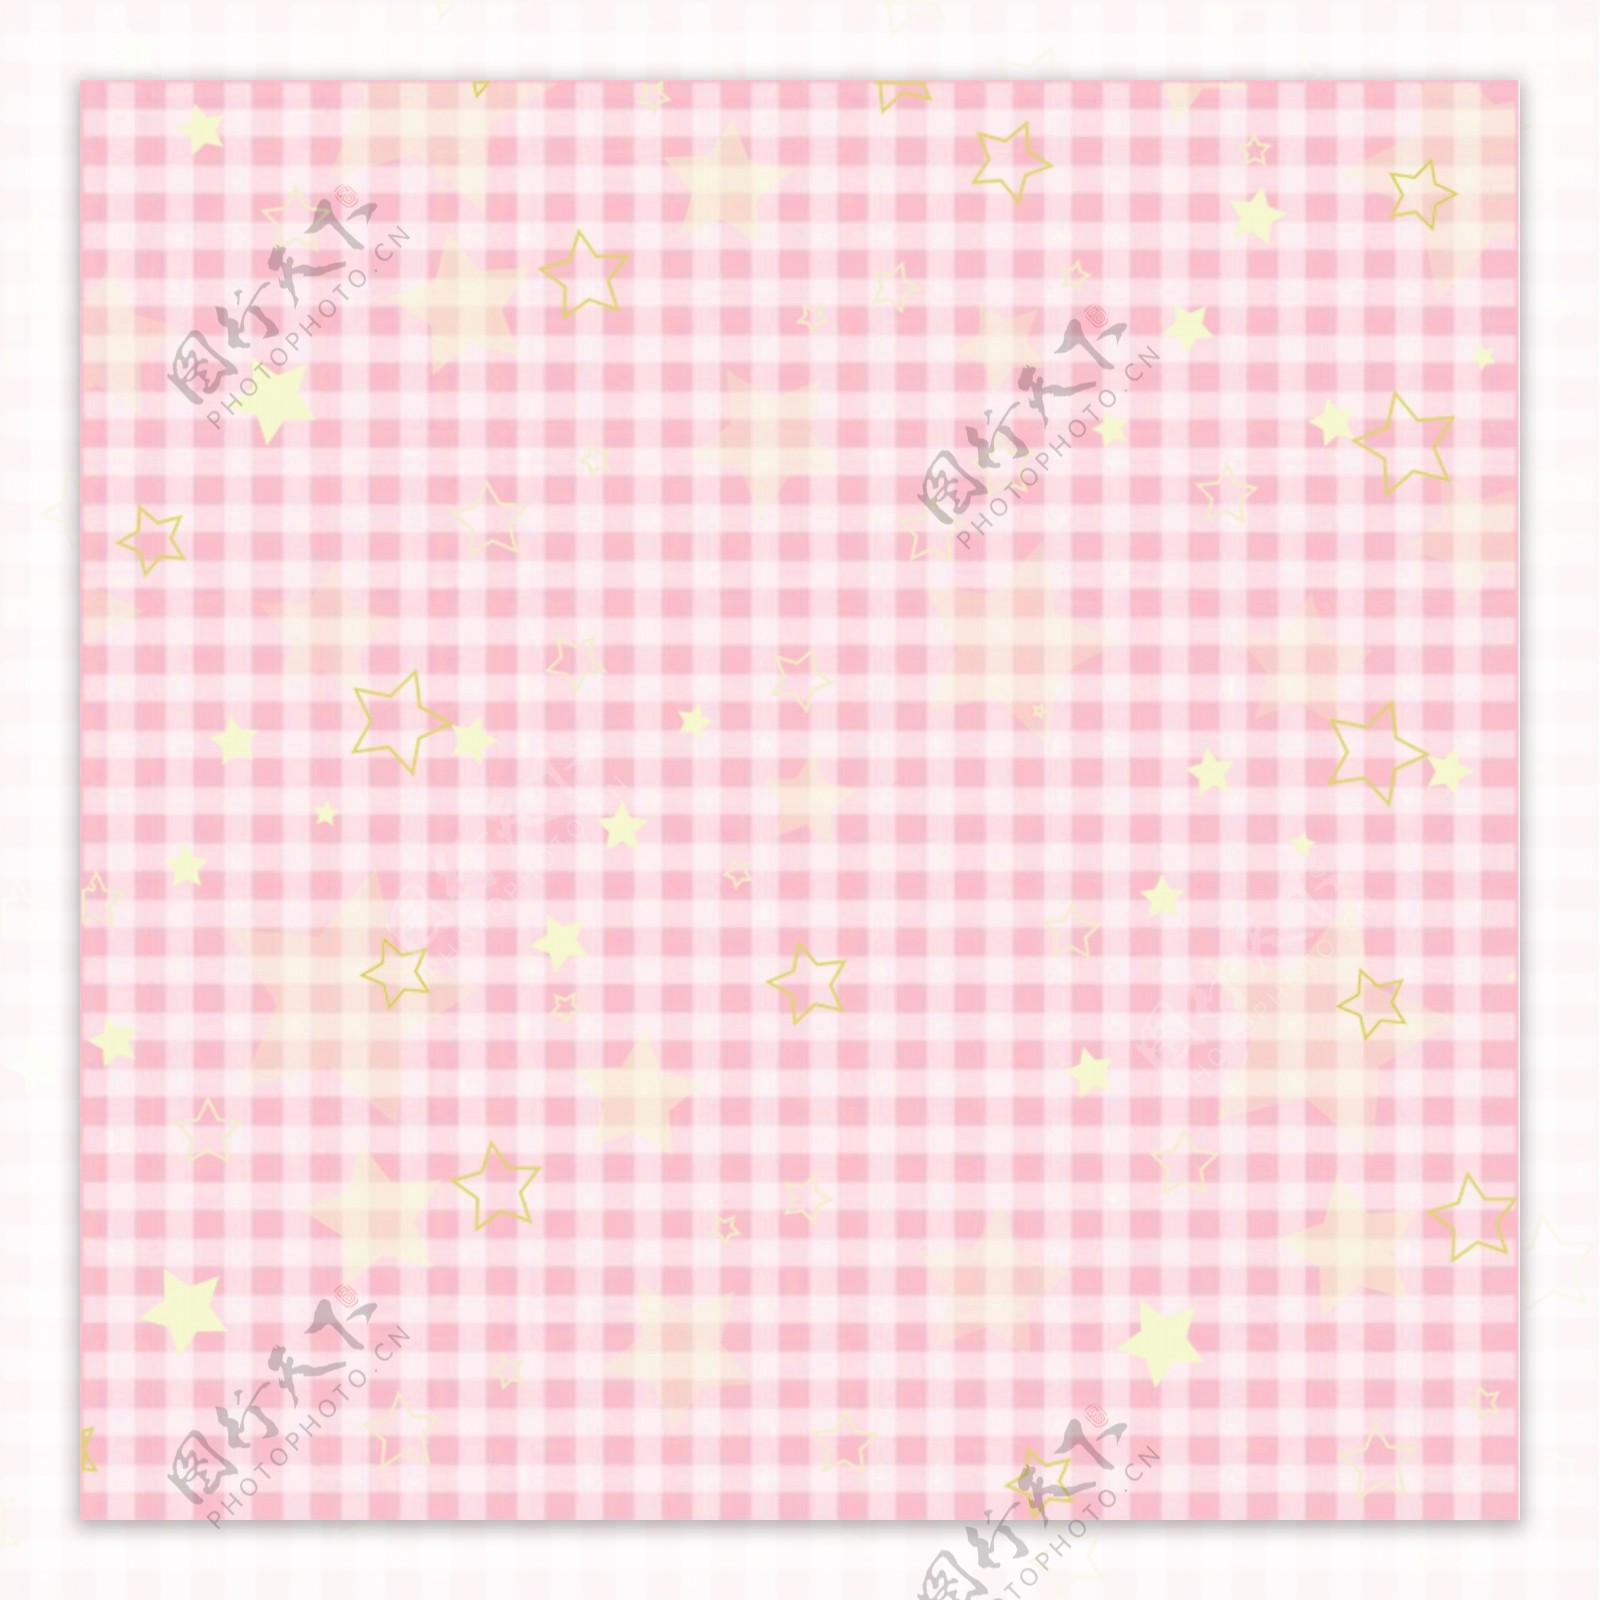 粉红格子星星底纹包装纸背景